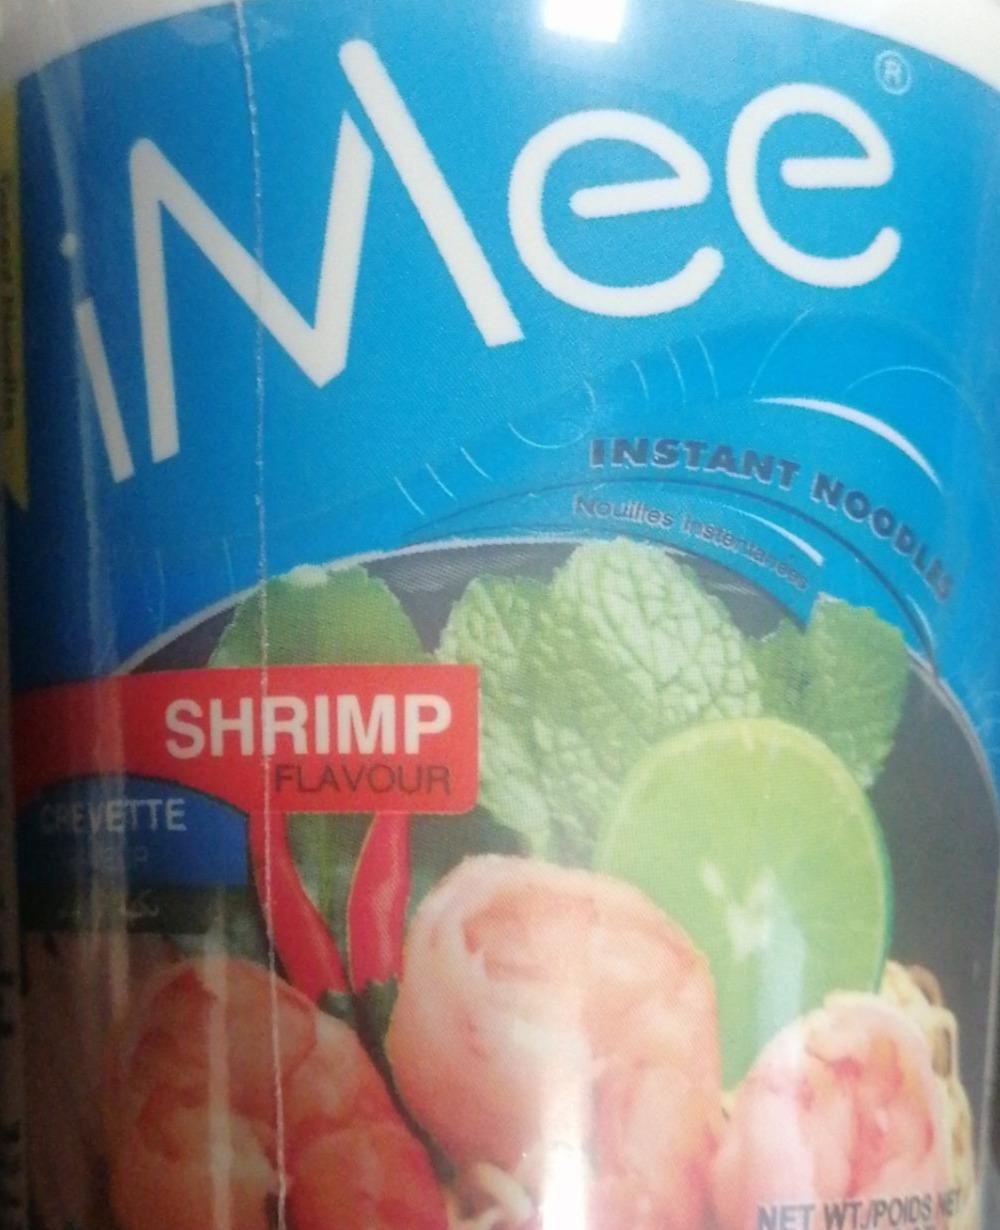 Fotografie - Instant noodles shrimp flavour iMee